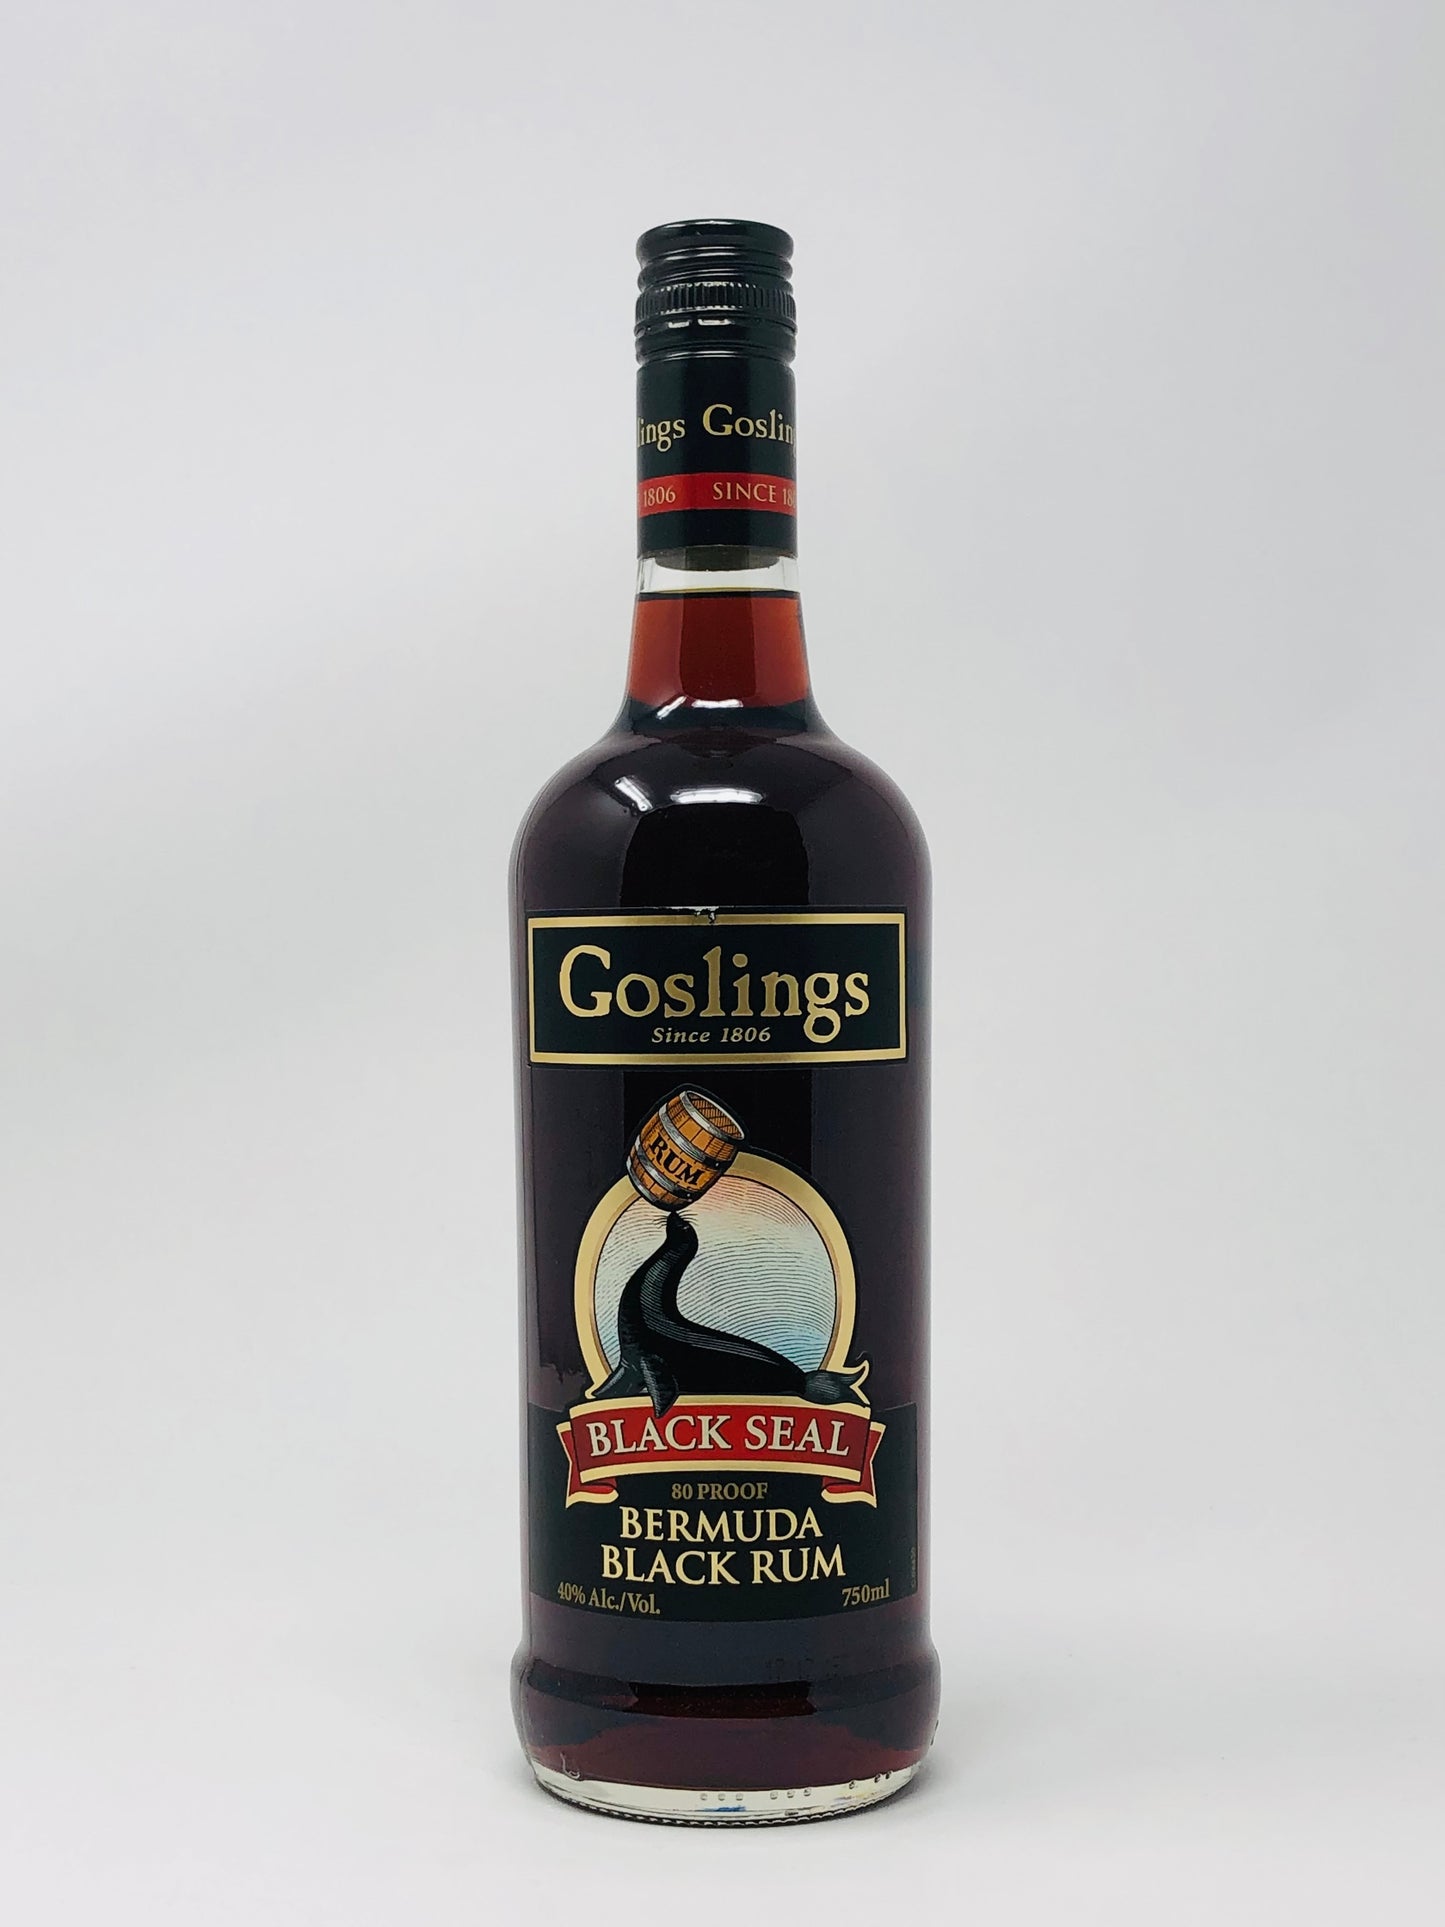 Goslings Black Seal Bermuda Black Rum 750ml